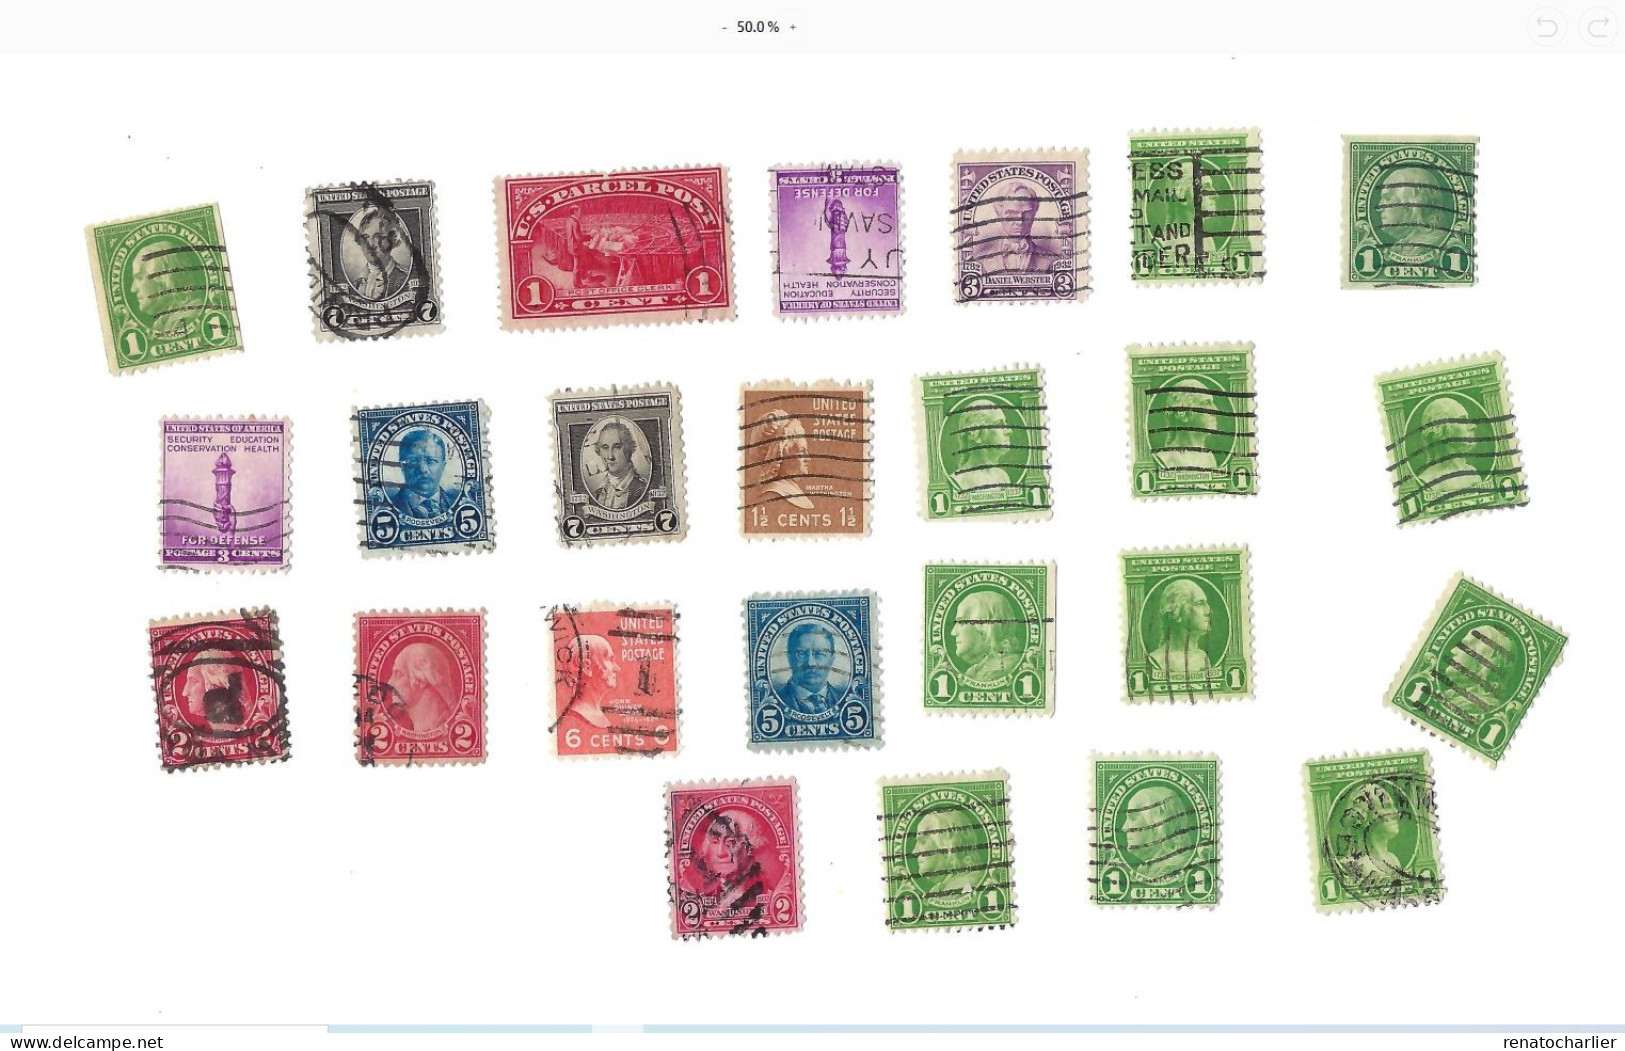 Collection de 150 timbres  oblitérés.